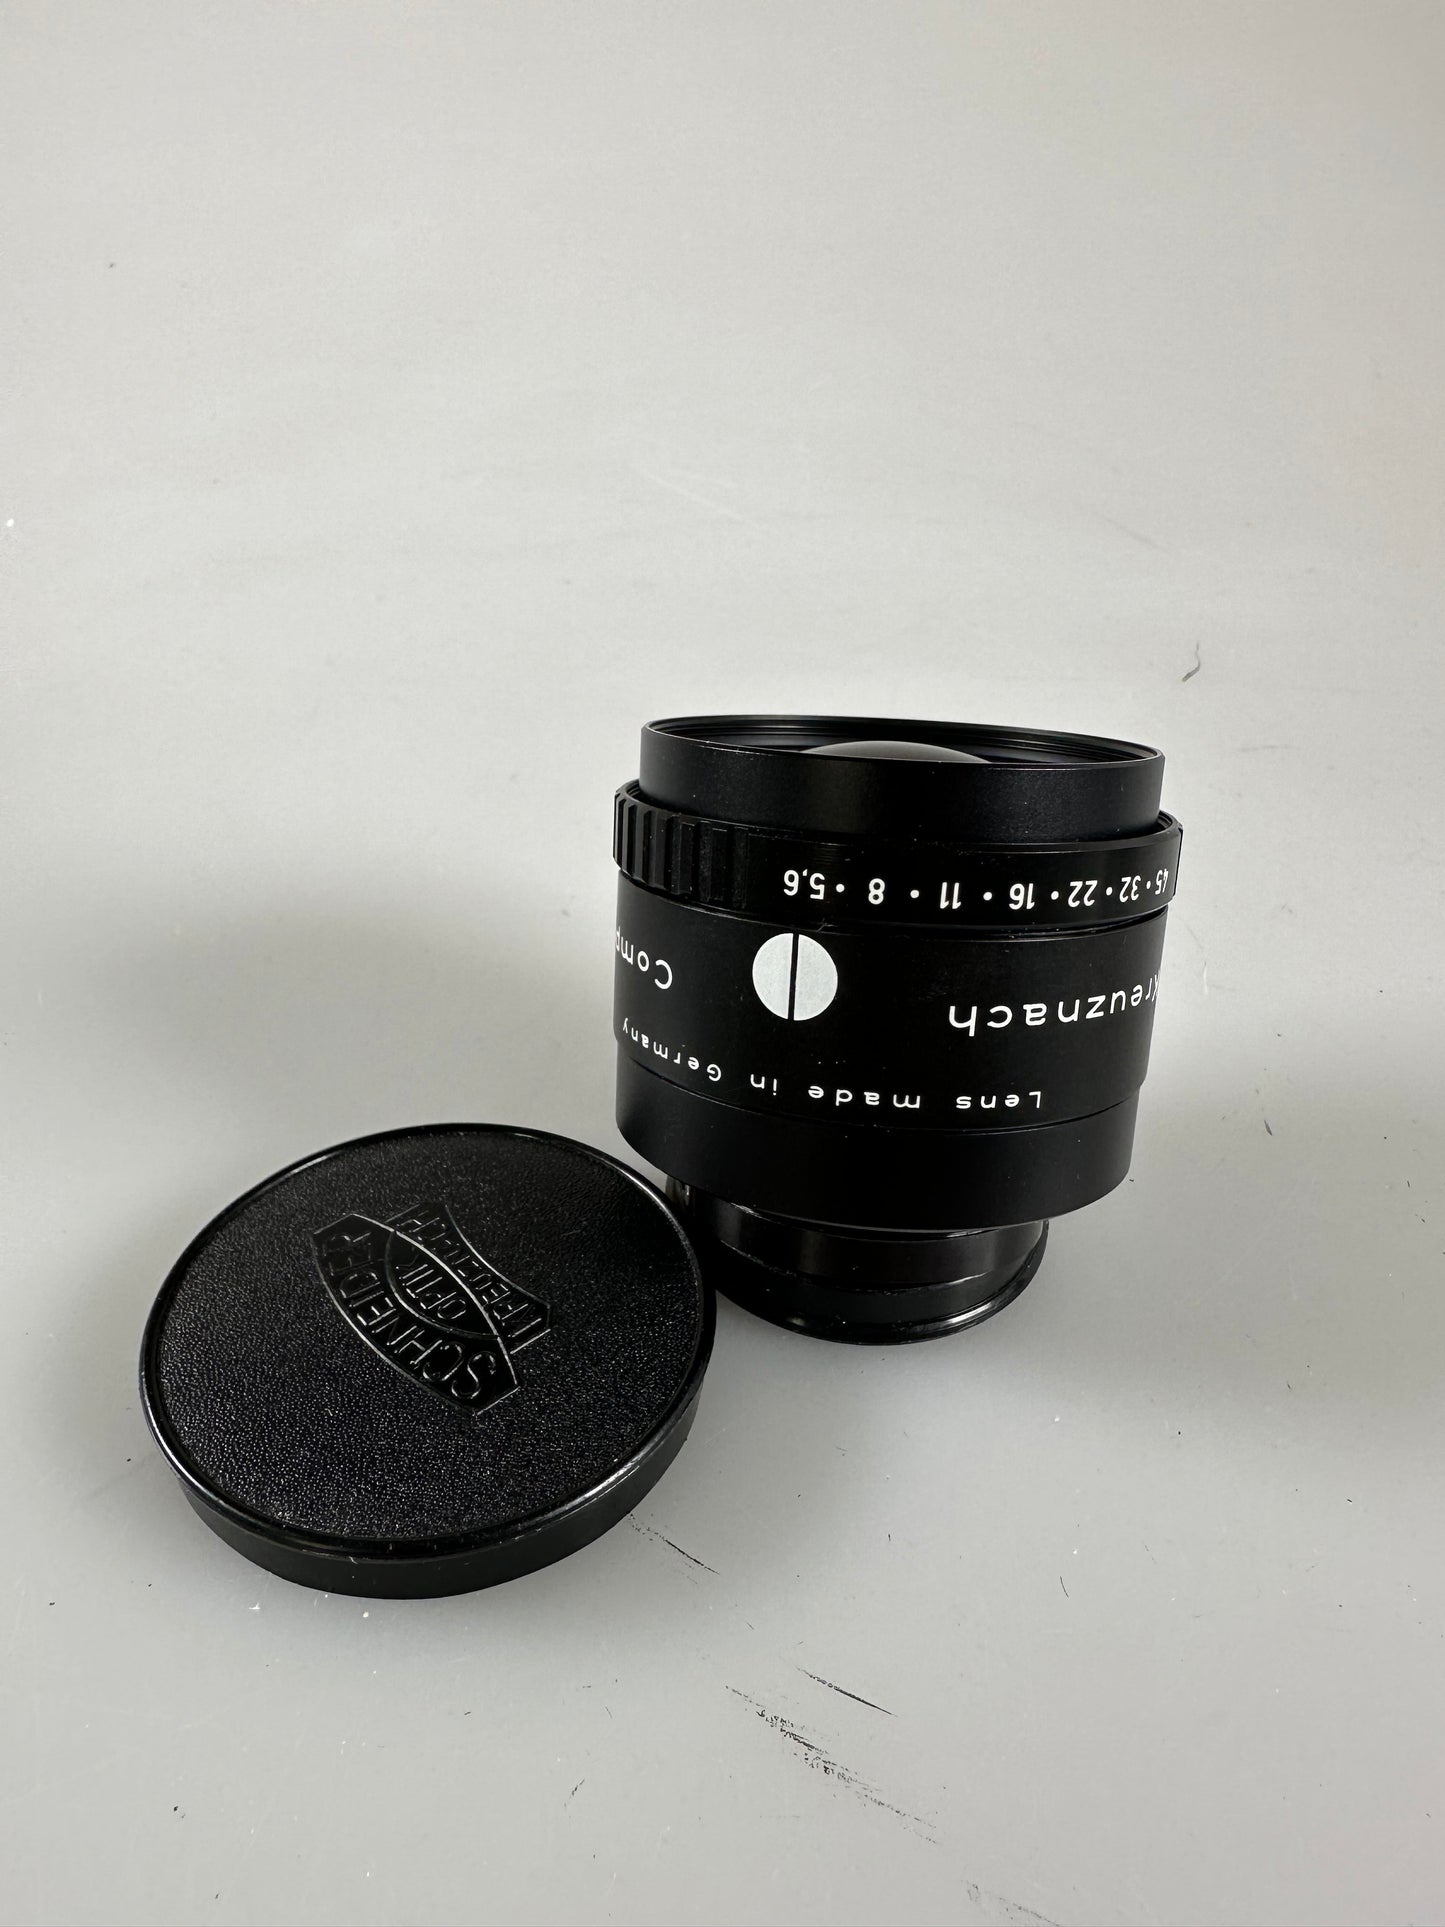 Schneider Componon-S 150mm F5.6 Enlarger Lens